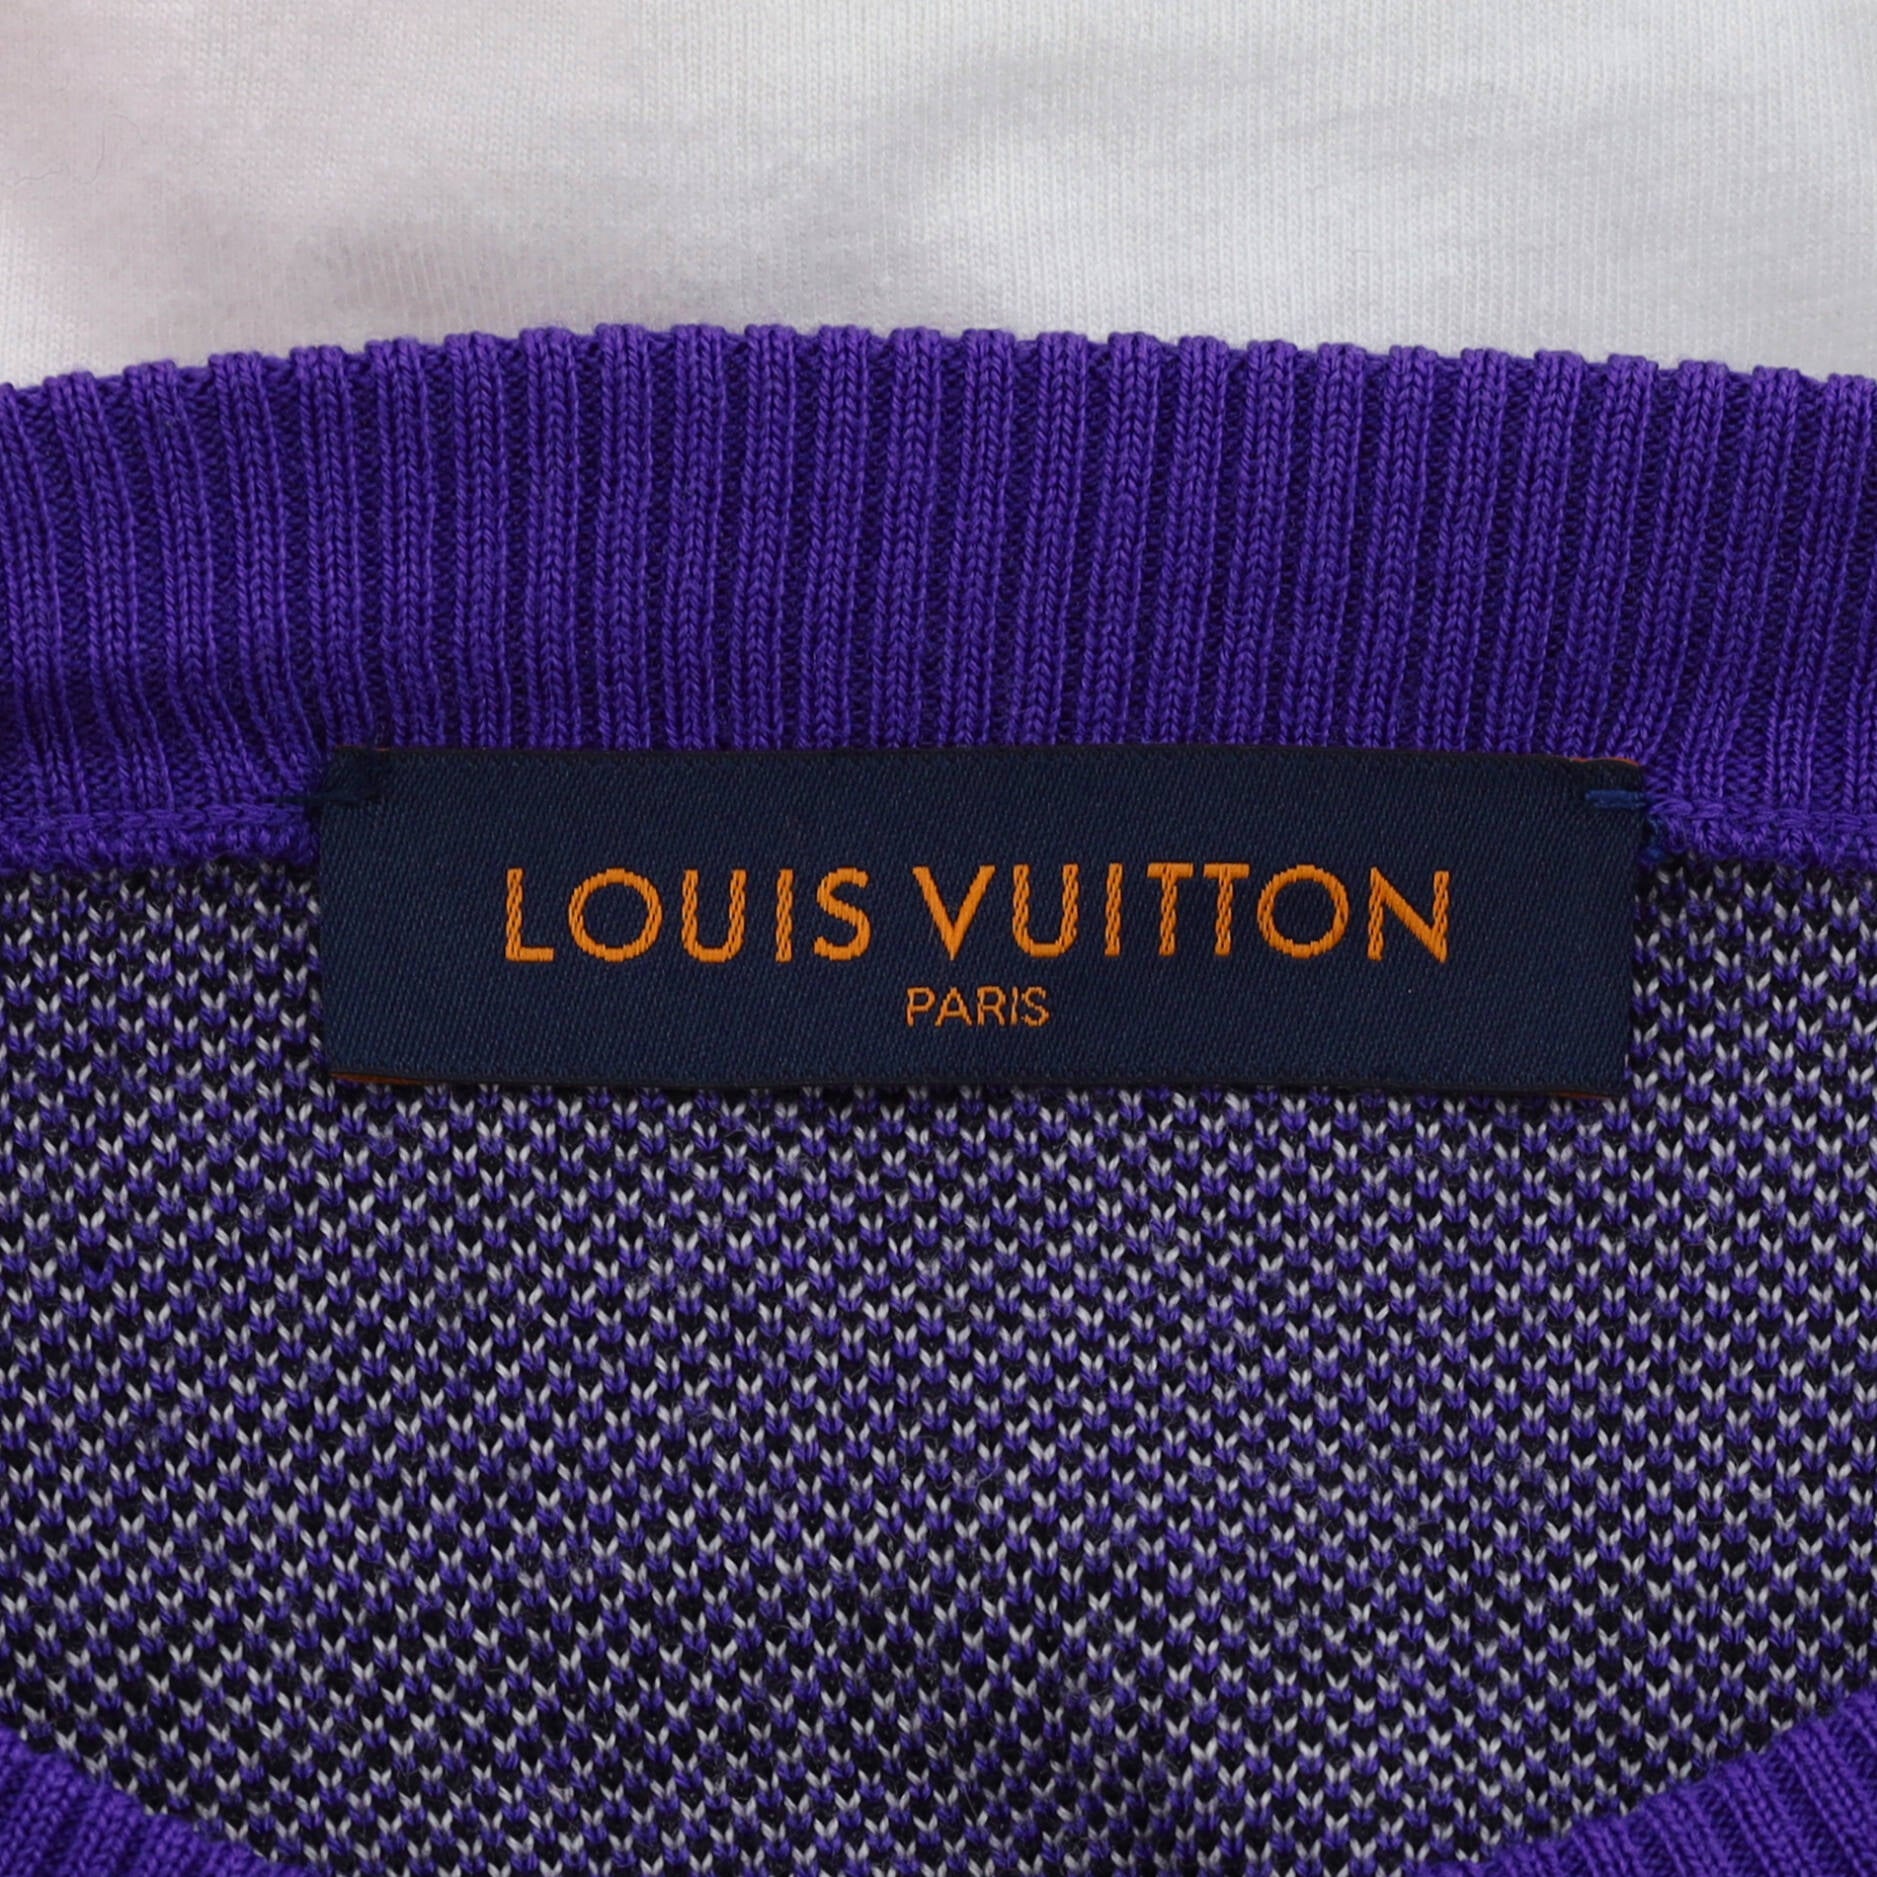 Louis Vuitton® Damier Signature Crewneck Black. Size 3l